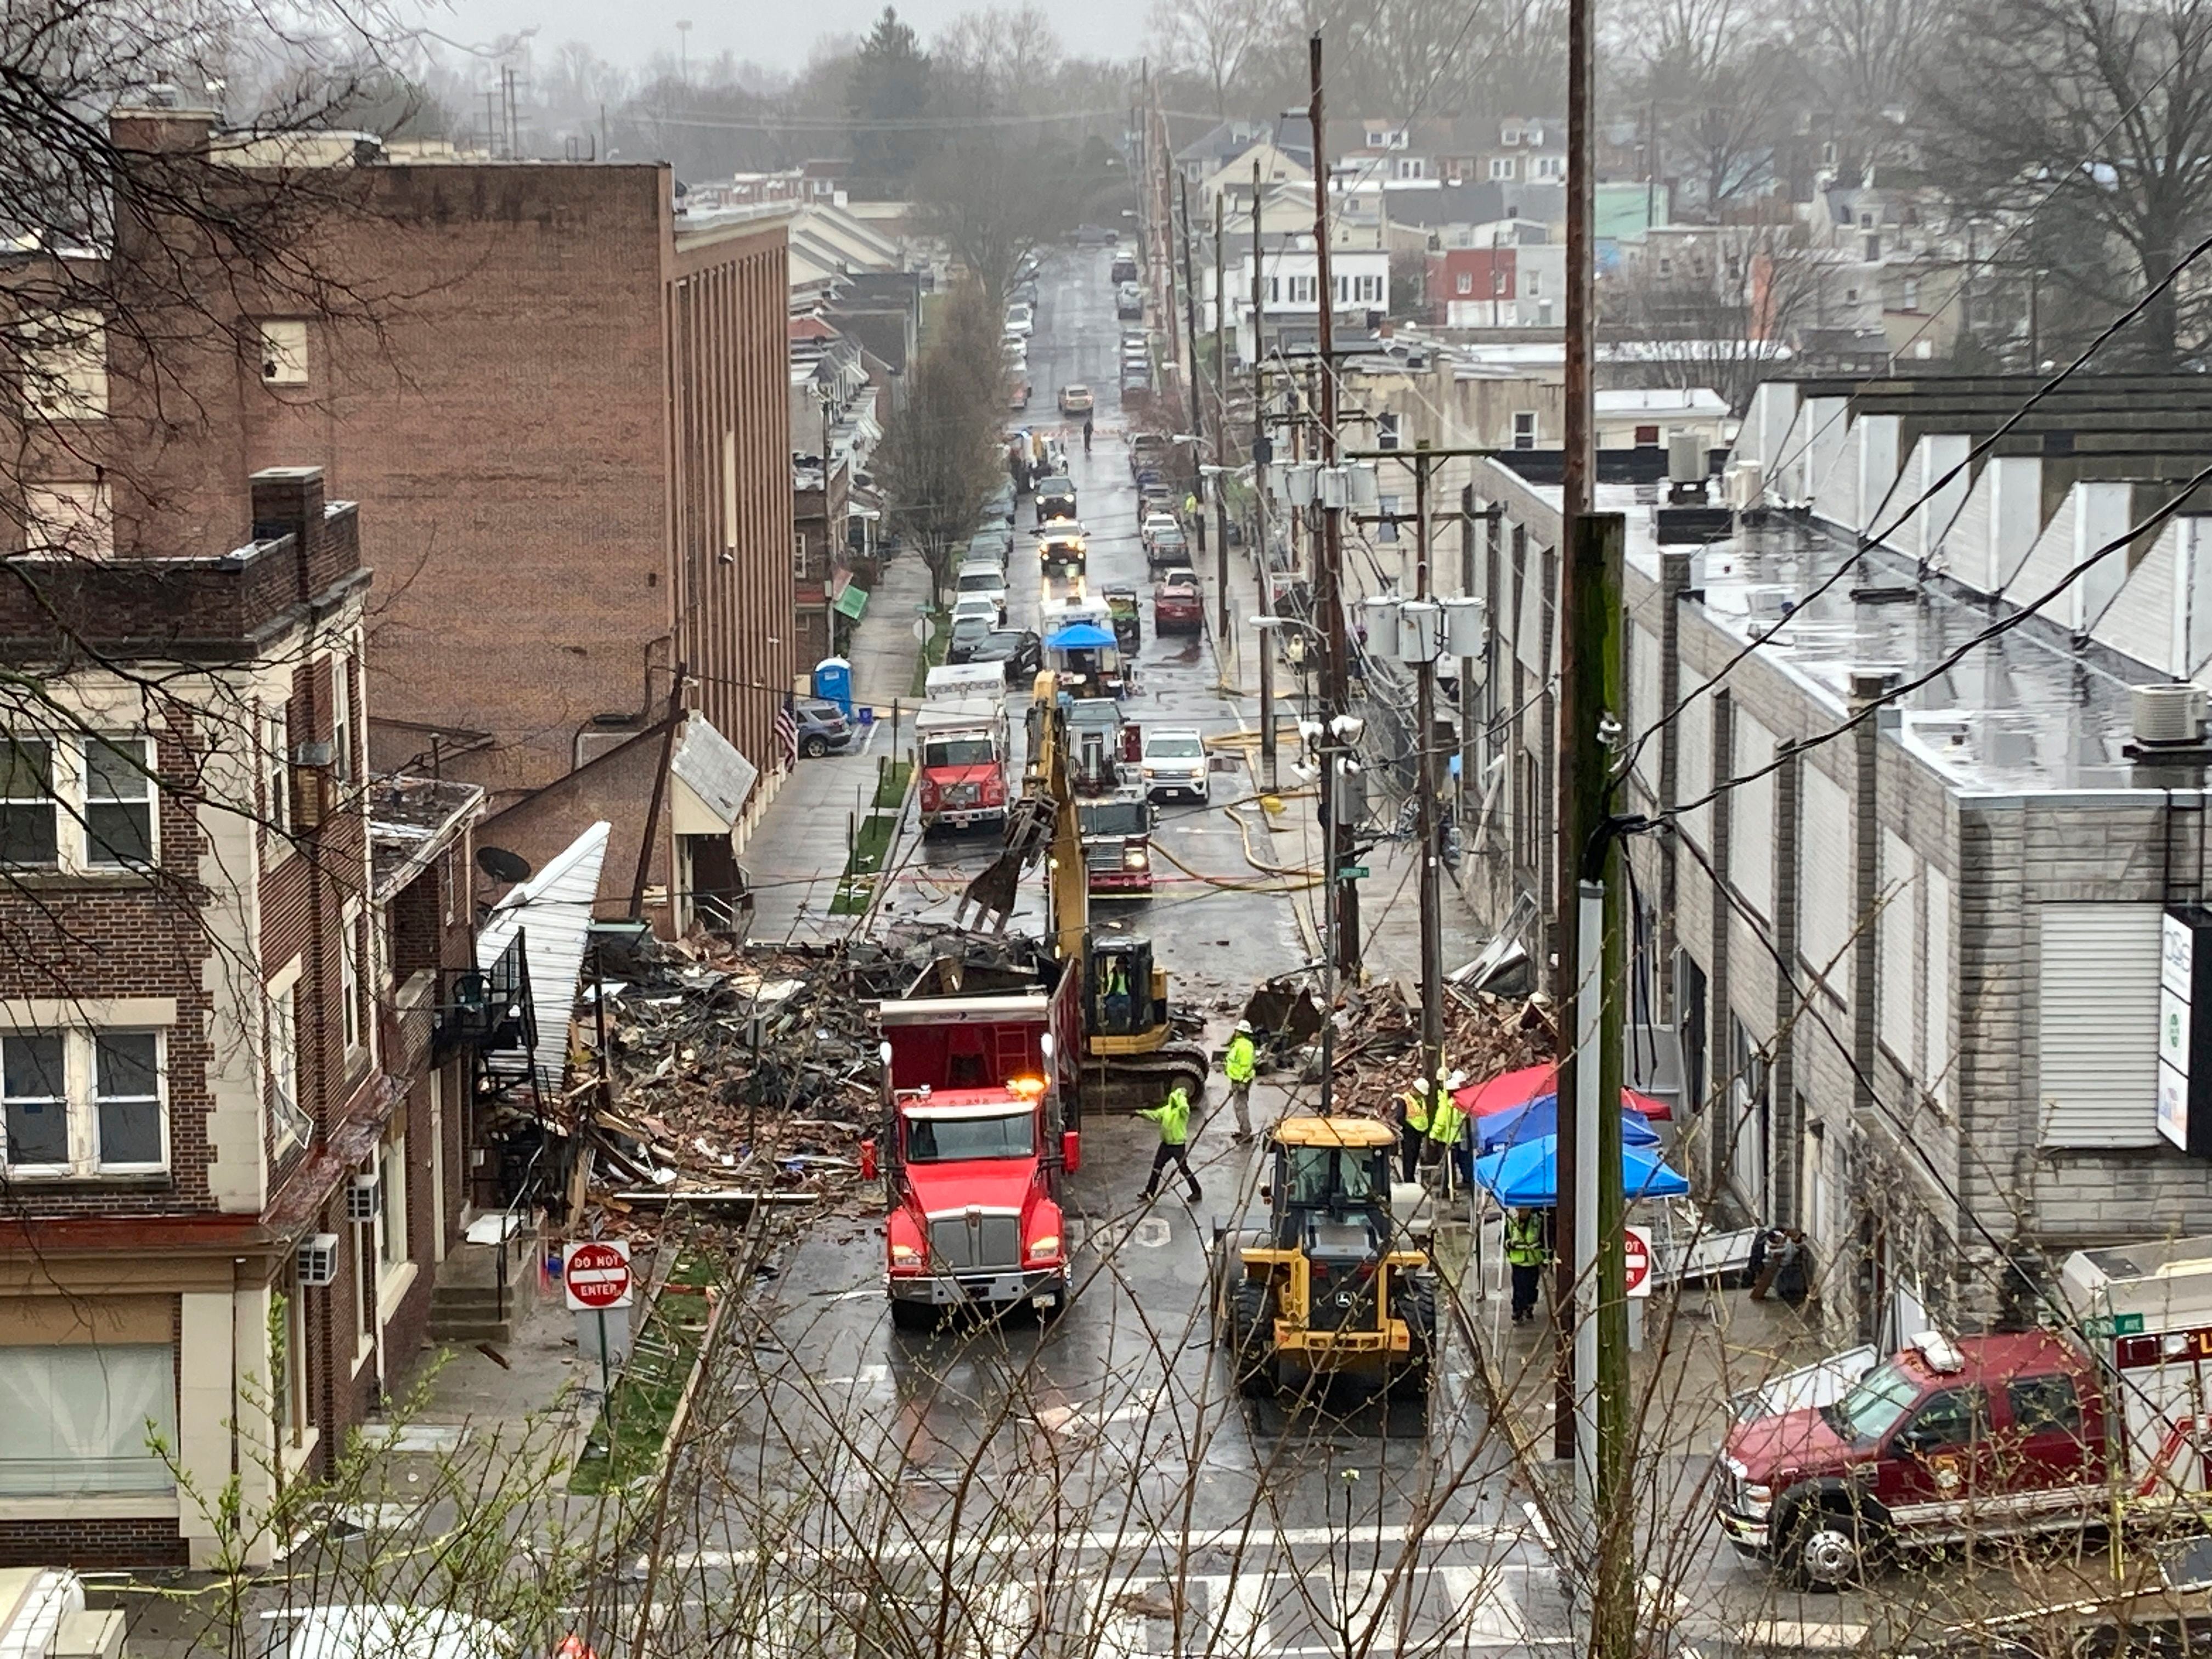 Socorristas con maquinaria pesada laboran en el sitio donde ocurrió una explosión en una fábrica de chocolate, el sábado 25 de marzo de 2023, en West Reading, Pensilvania. (AP Foto/Michael Rubinkam)